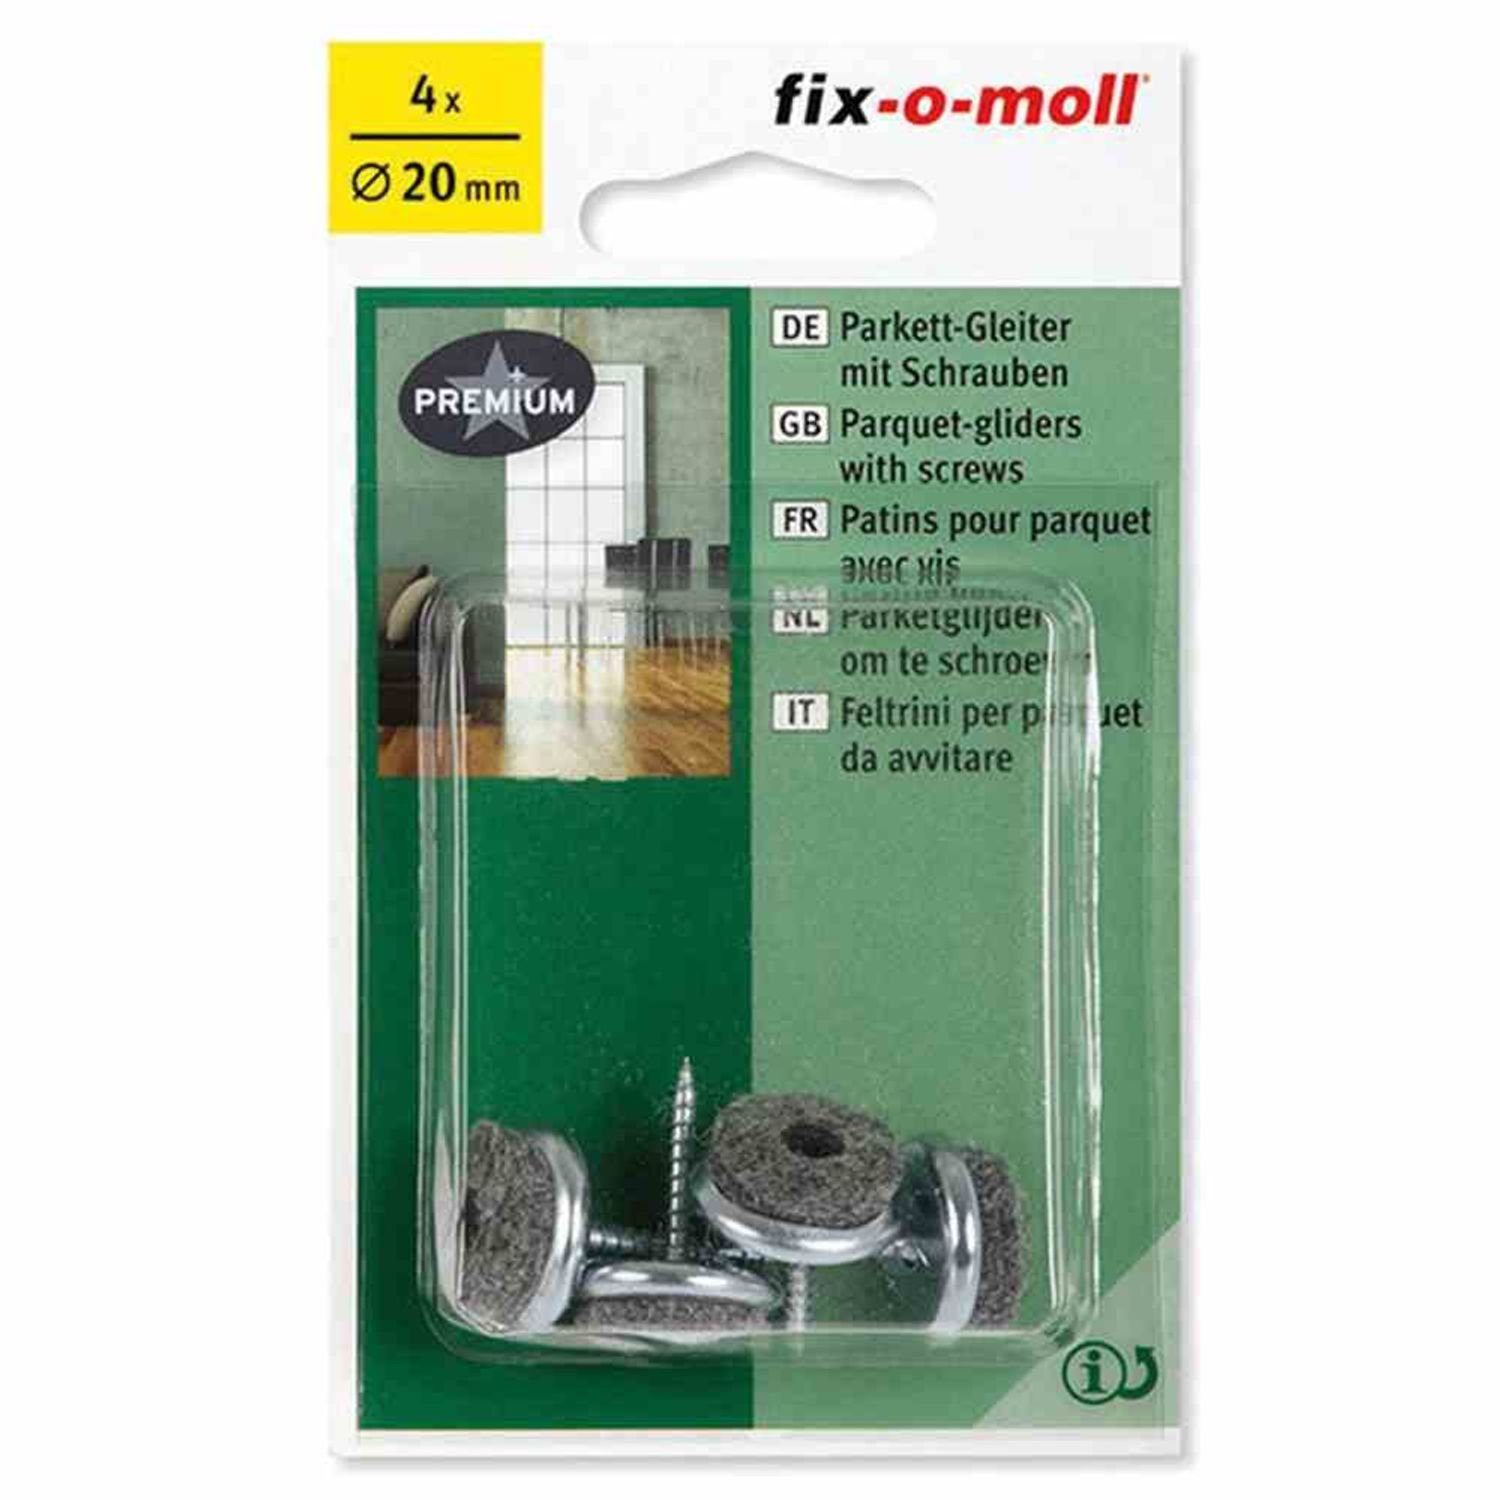 Fix-O-Moll Filzgleiter Parkettgleiter mit Schraube 20 mm 4 Stück